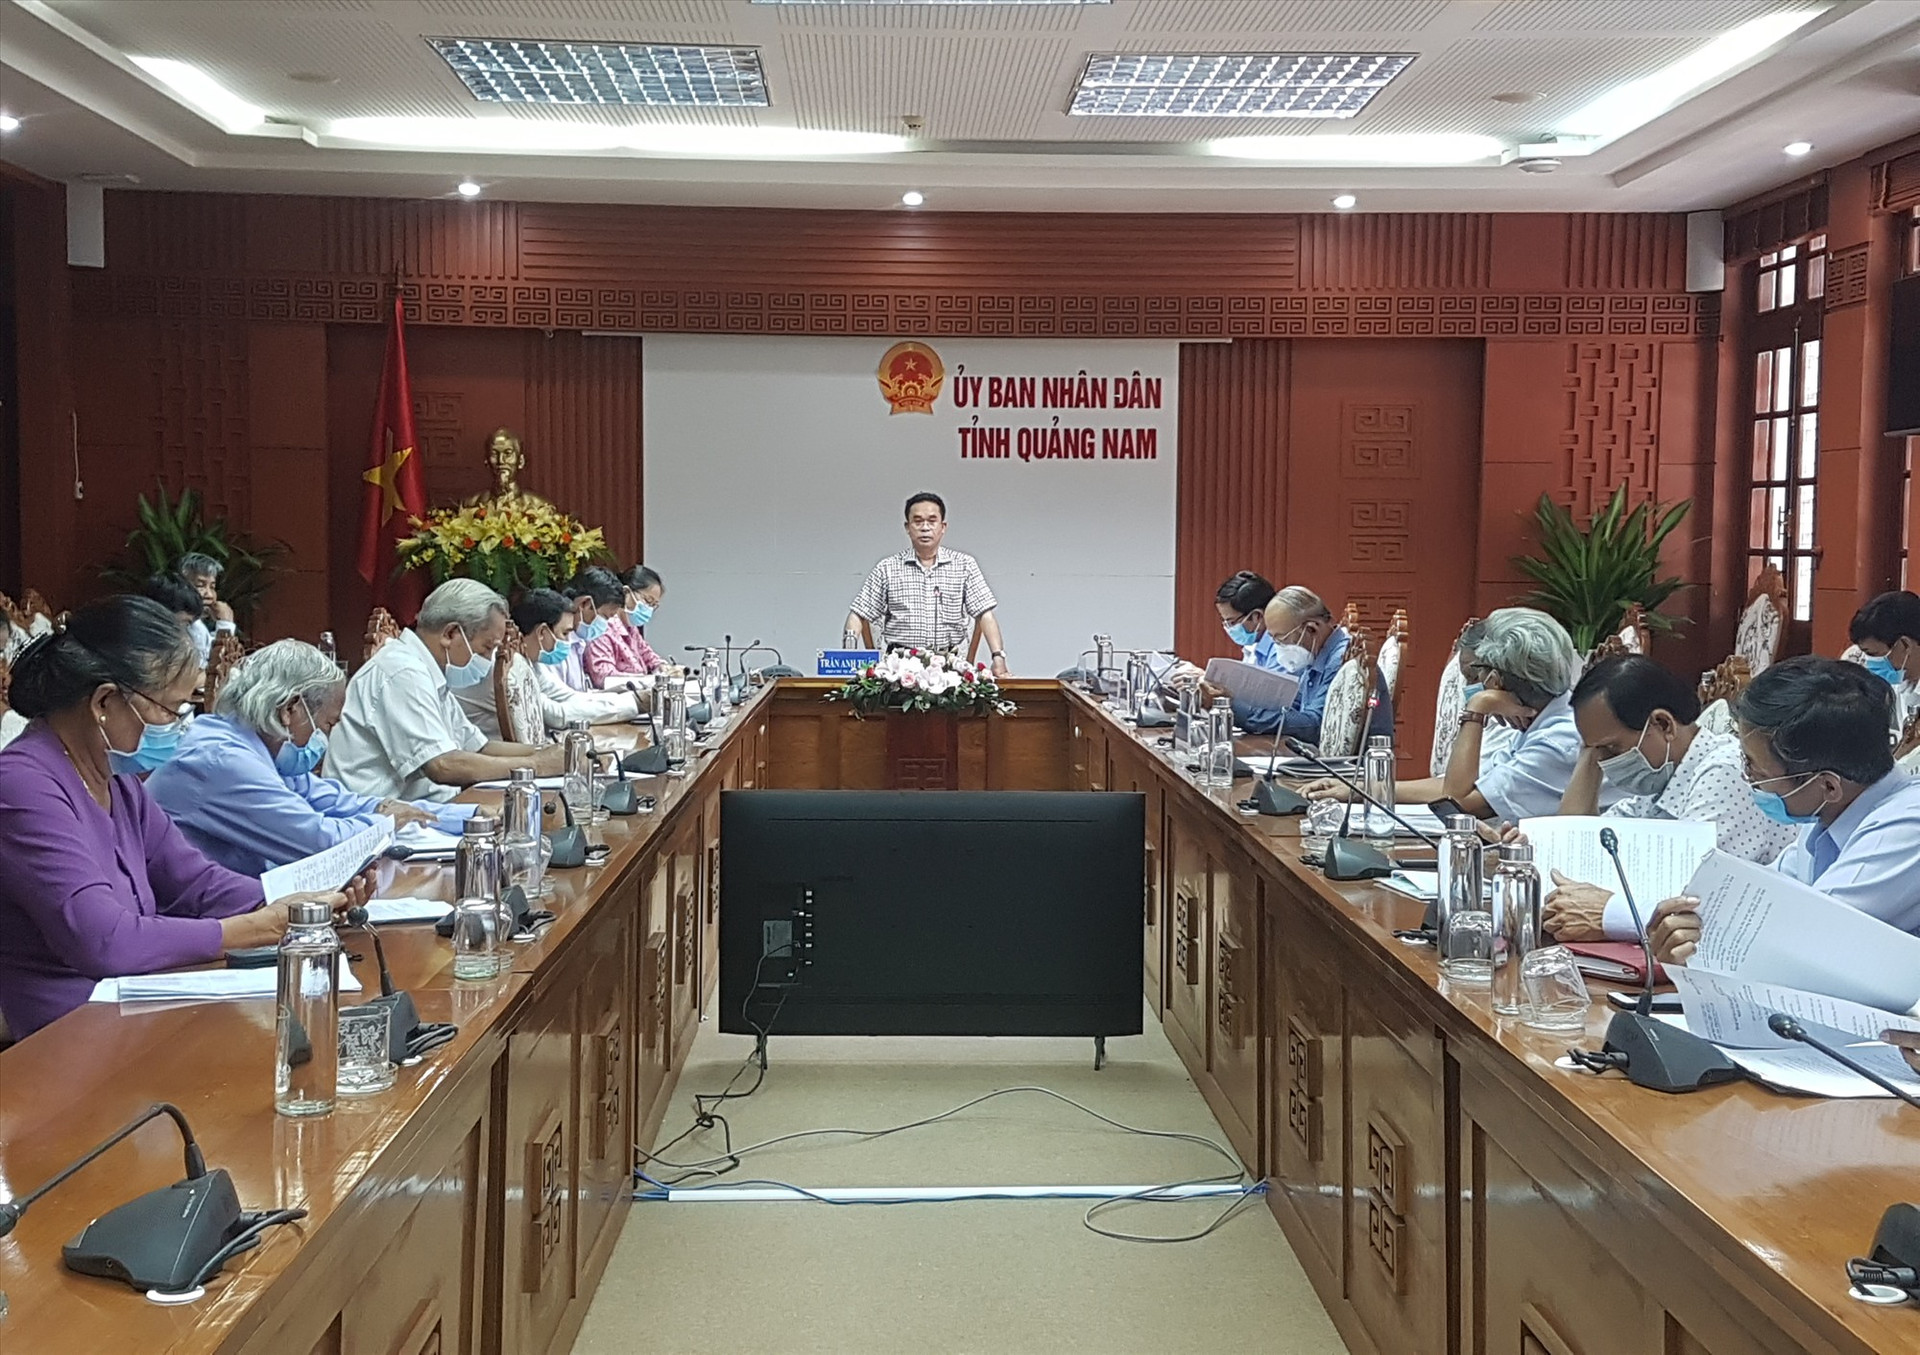 Phó Chủ tịch UBND tỉnh Trần Anh Tuấn yêu cầu tập hợp đầy đủ căn cứ pháp lý để xem xét giải quyết vụ việc. Ảnh: L.D